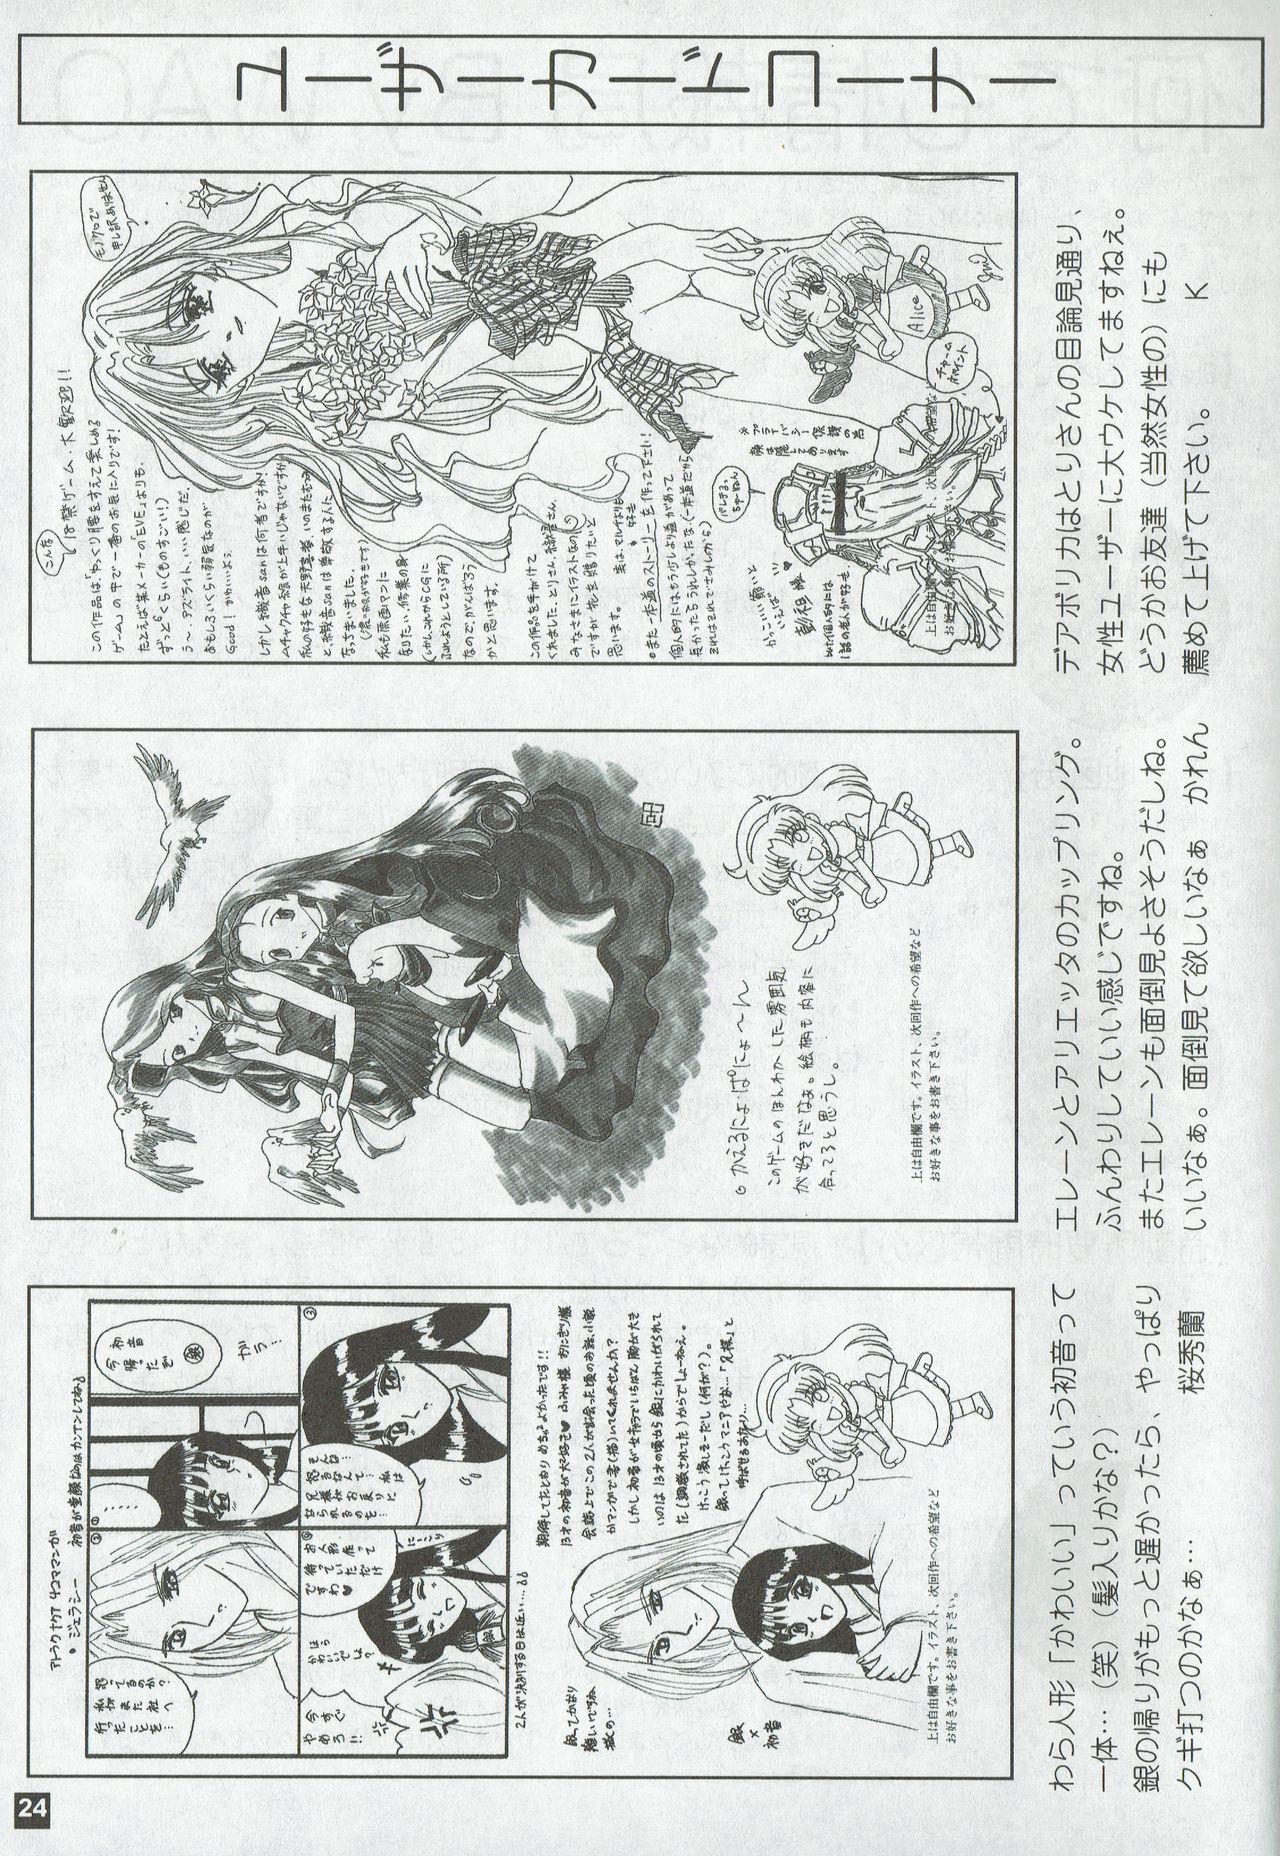 Arisu no Denchi Bakudan Vol. 02 23